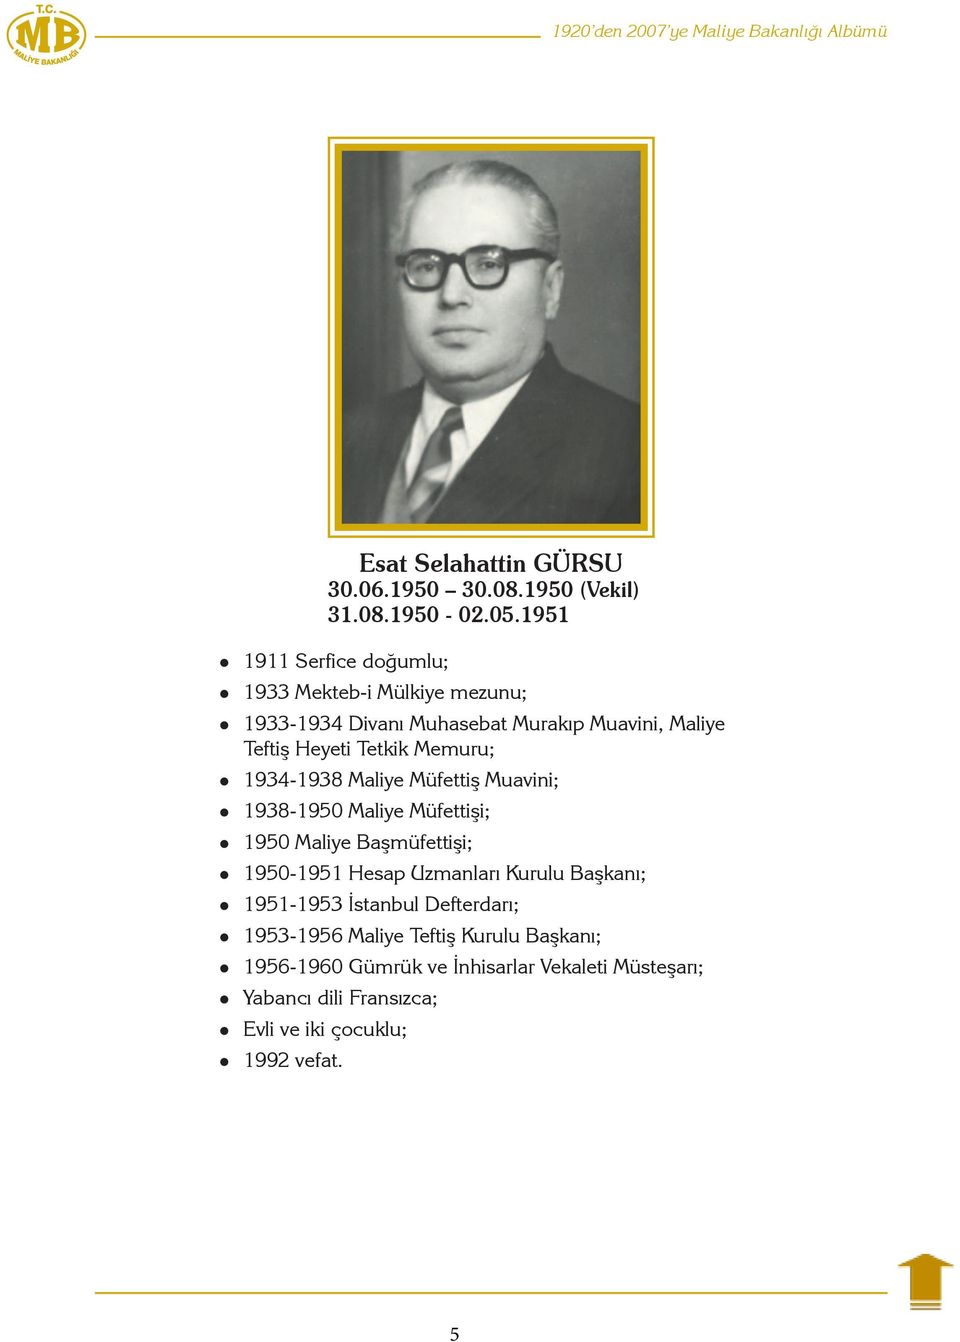 1934-1938 Maliye Müfettiş Muavini; 1938-1950 Maliye Müfettişi; 1950 Maliye Başmüfettişi; 1950-1951 Hesap Uzmanları Kurulu Başkanı;